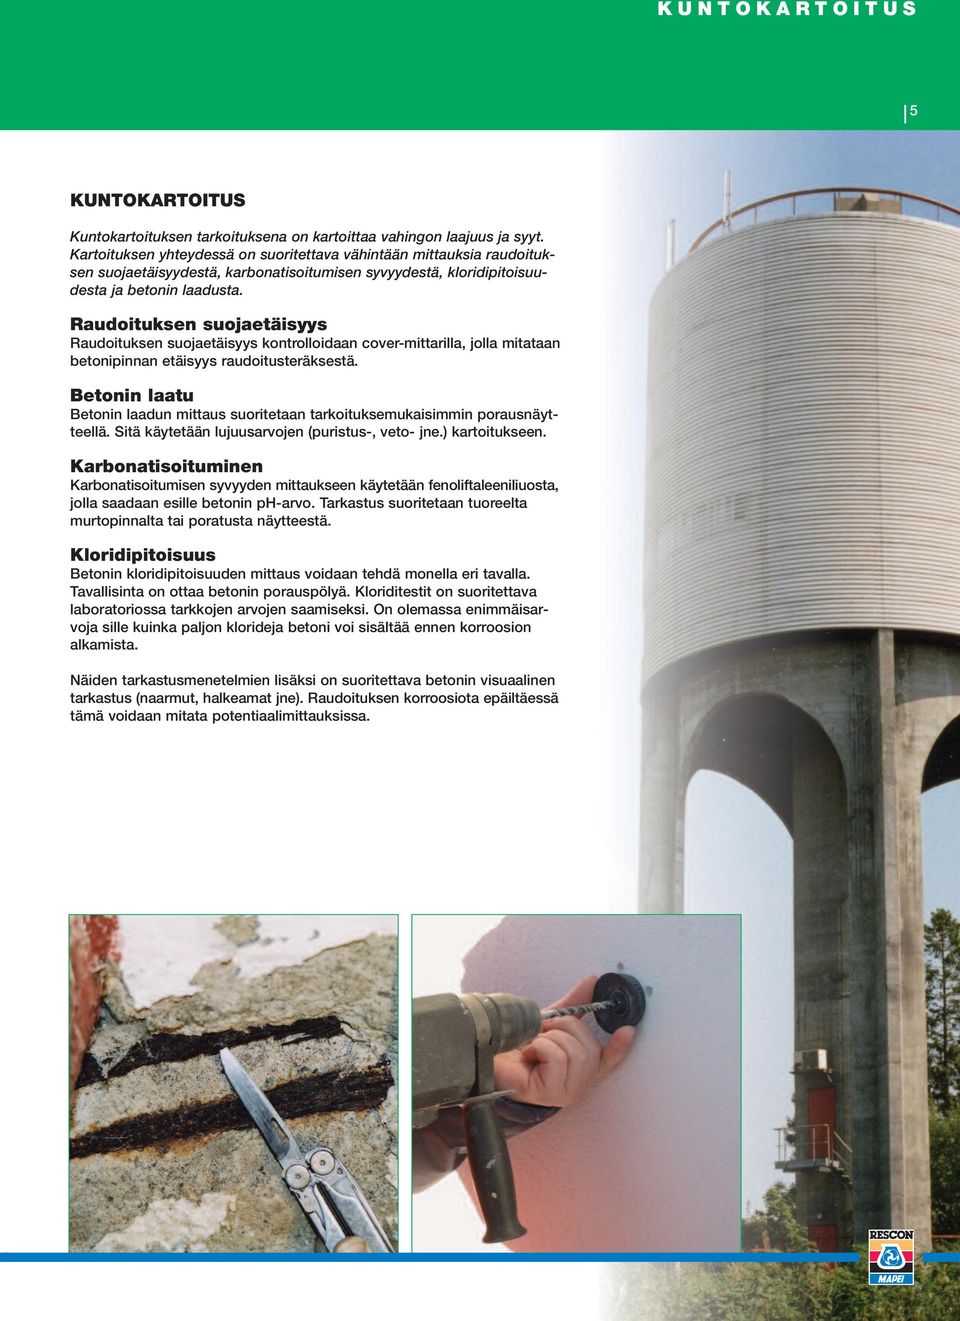 Raudoituksen suojaetäisyys Raudoituksen suojaetäisyys kontrolloidaan cover-mittarilla, jolla mitataan betonipinnan etäisyys raudoitusteräksestä.